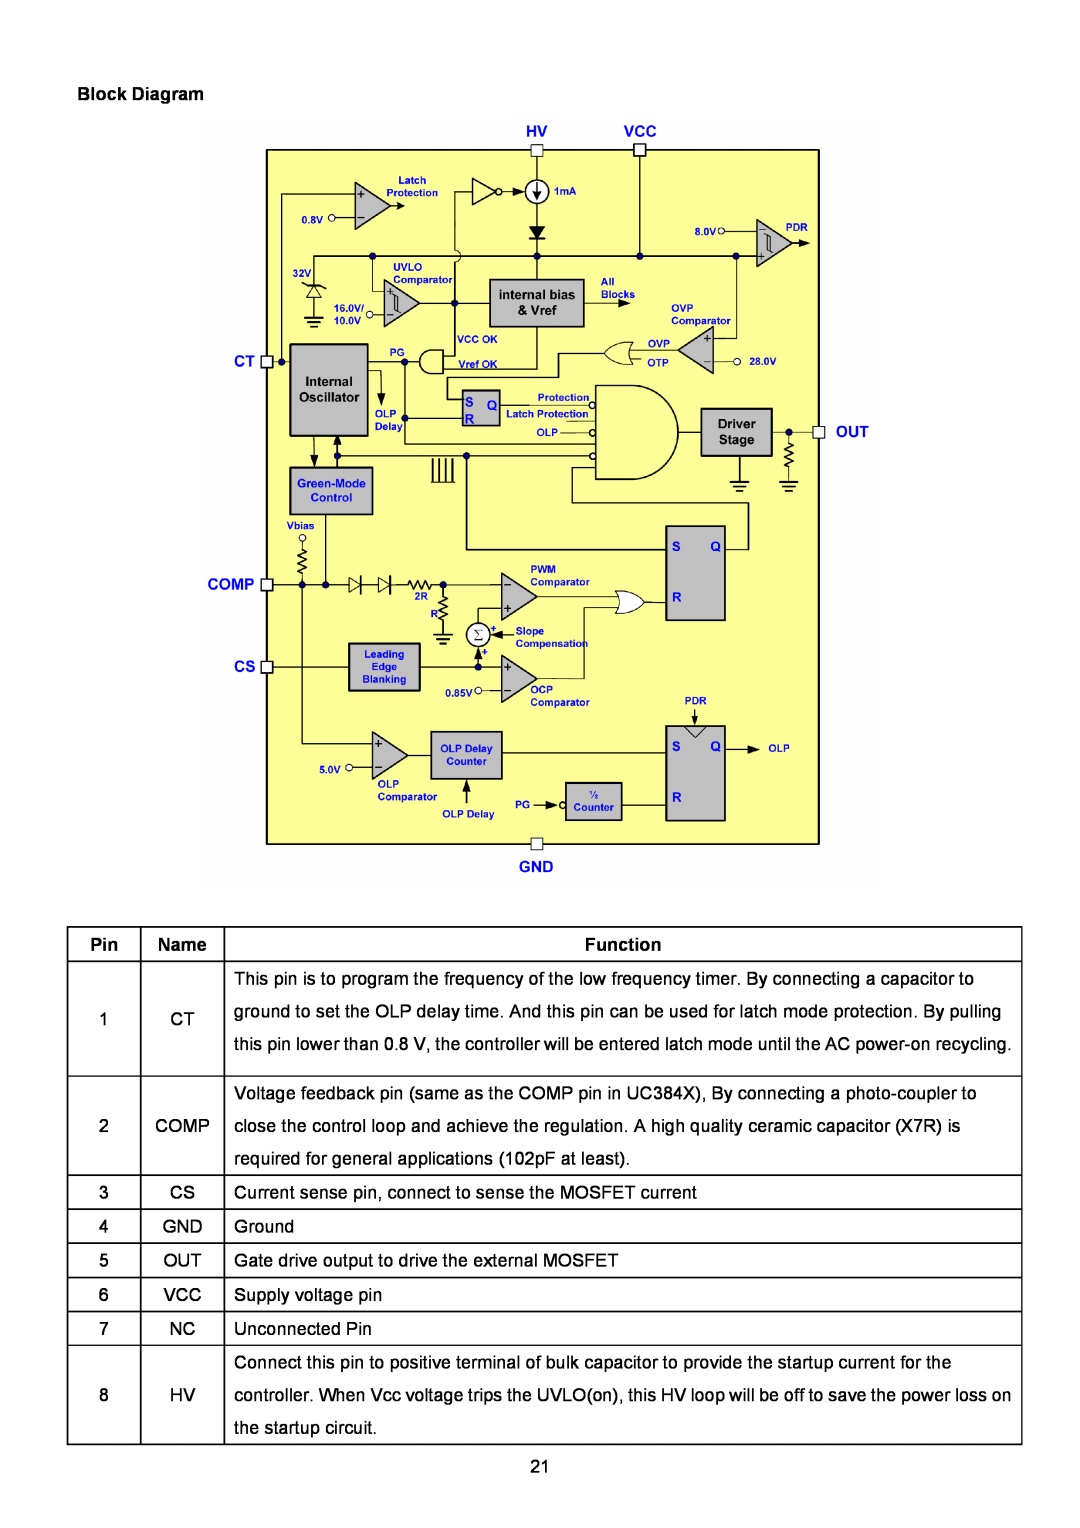 ViewSonic VSXXXXX service manual Block Diagram, 1 CT 2 COMP 3 CS 4 GND 5 OUT 6 VCC 7 NC 8 HV, Function 